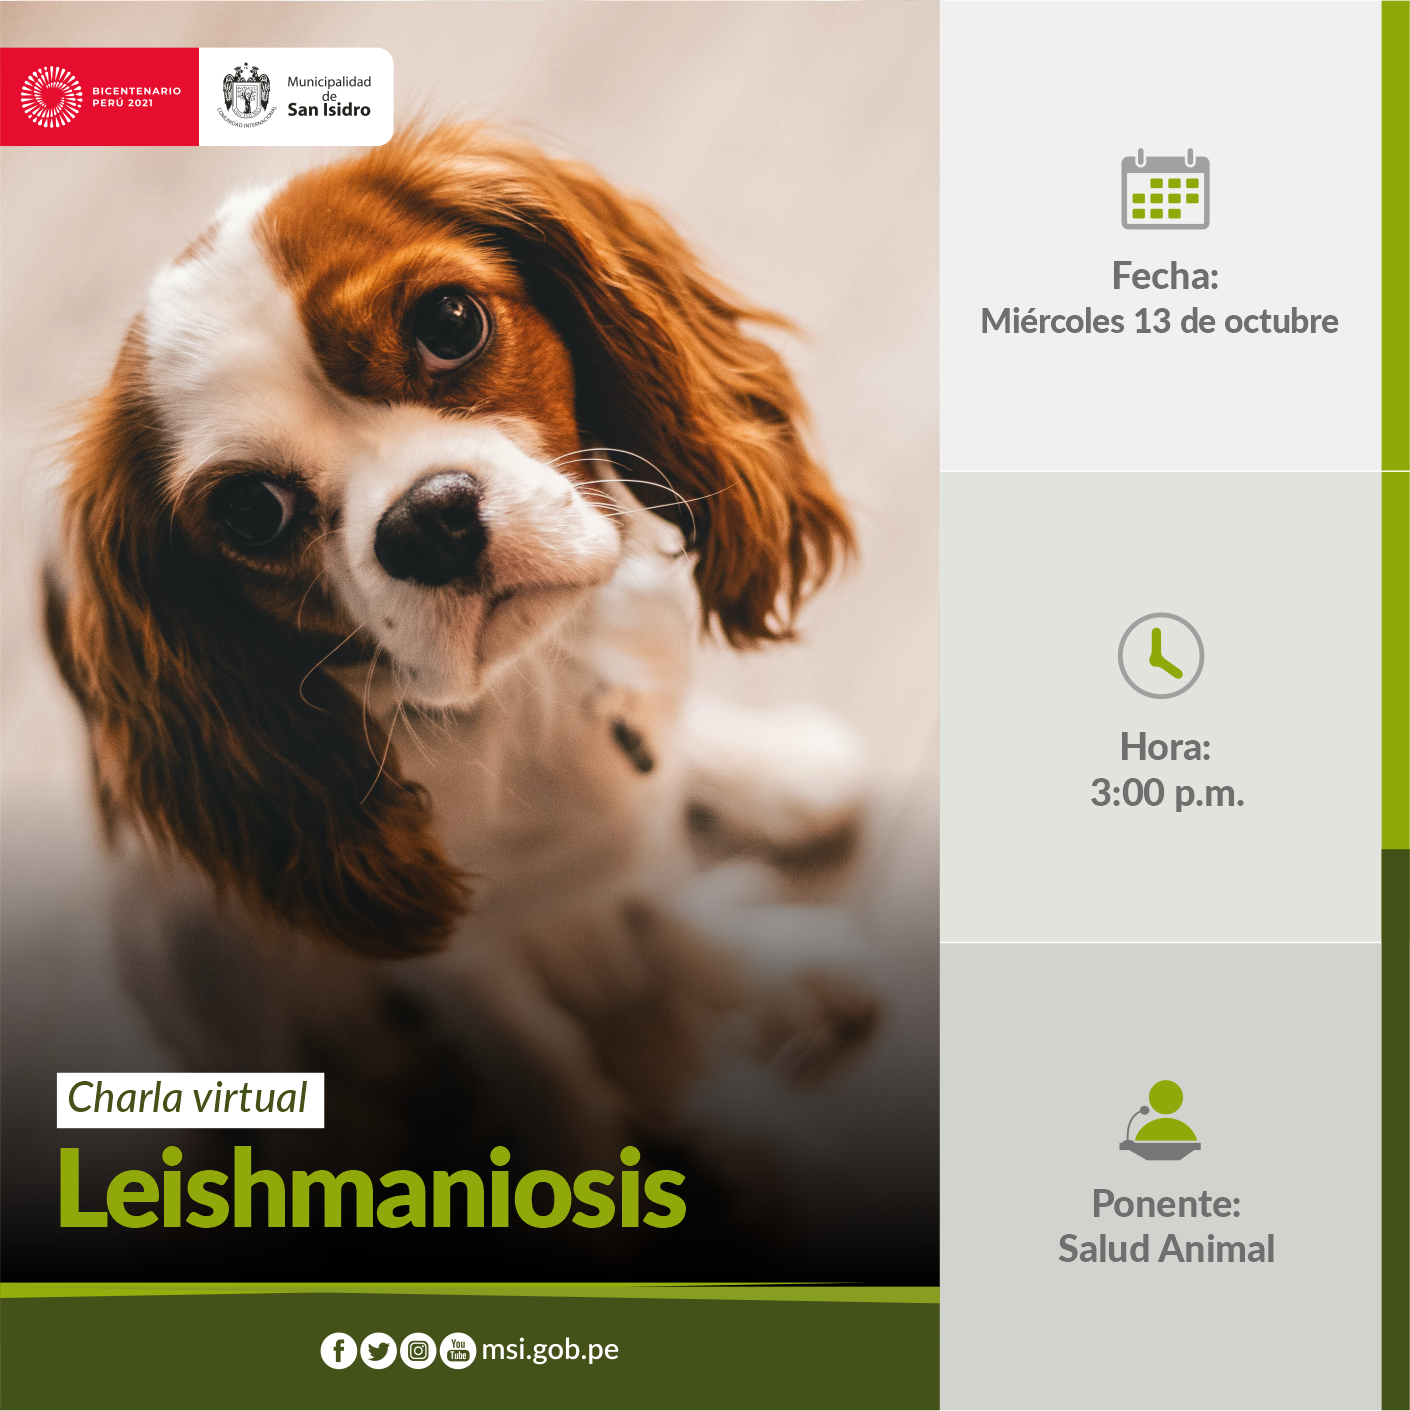 Leishmaniosis